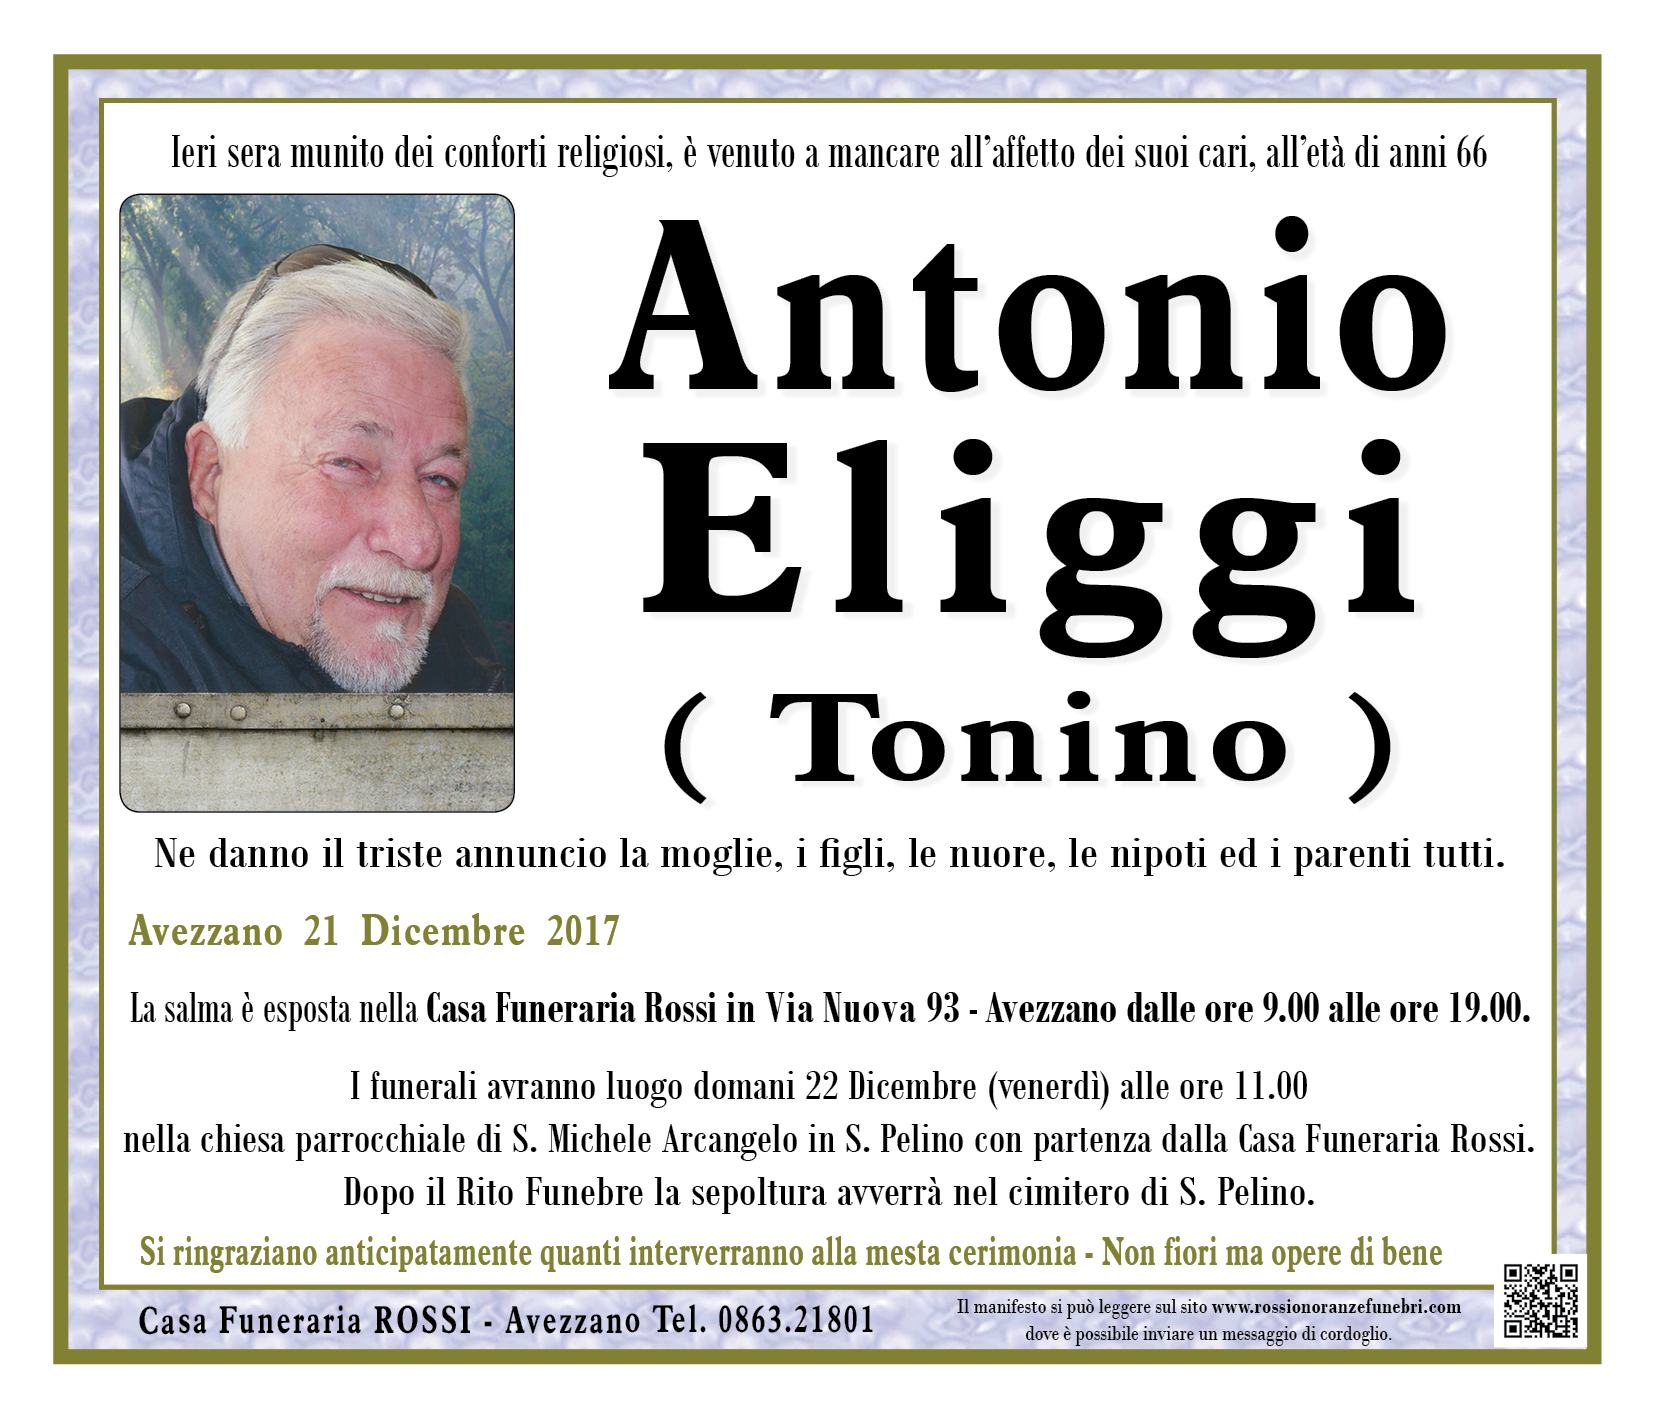 Antonio Eliggi